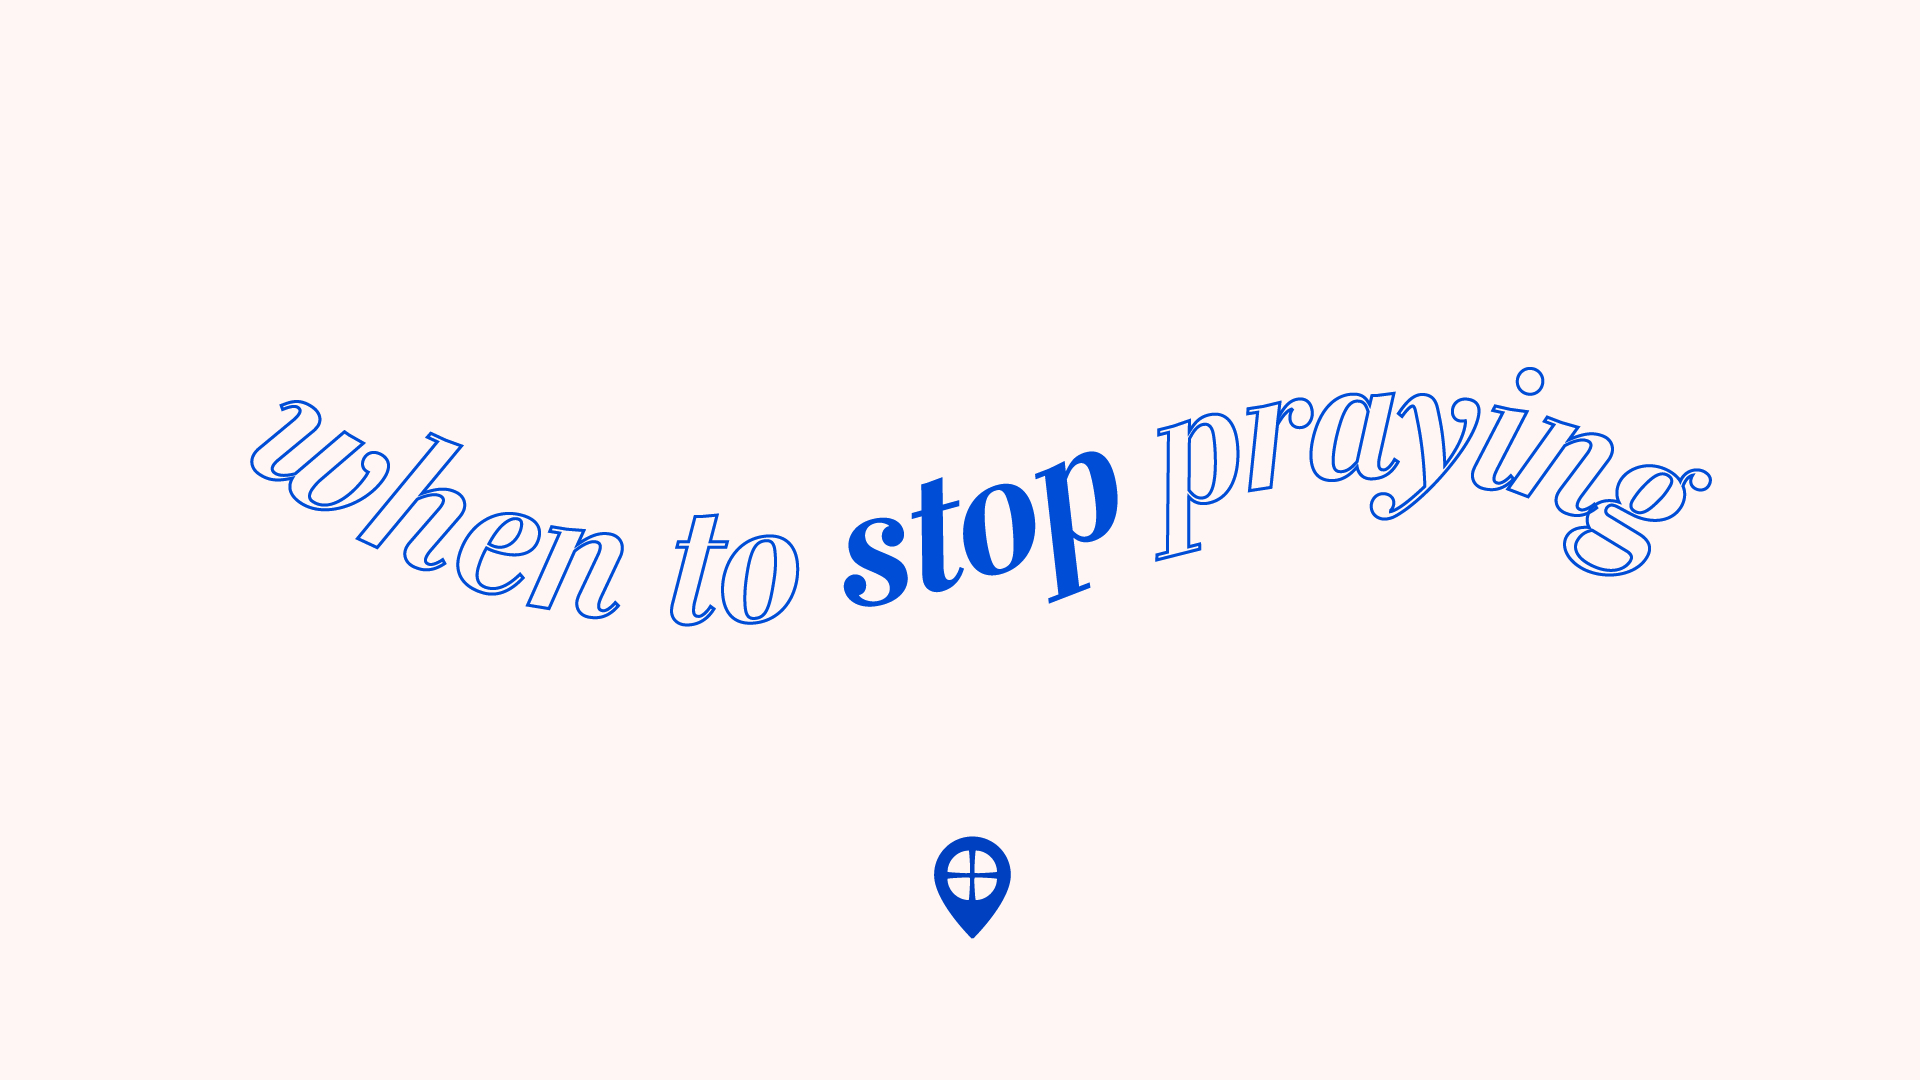 When to Stop Praying